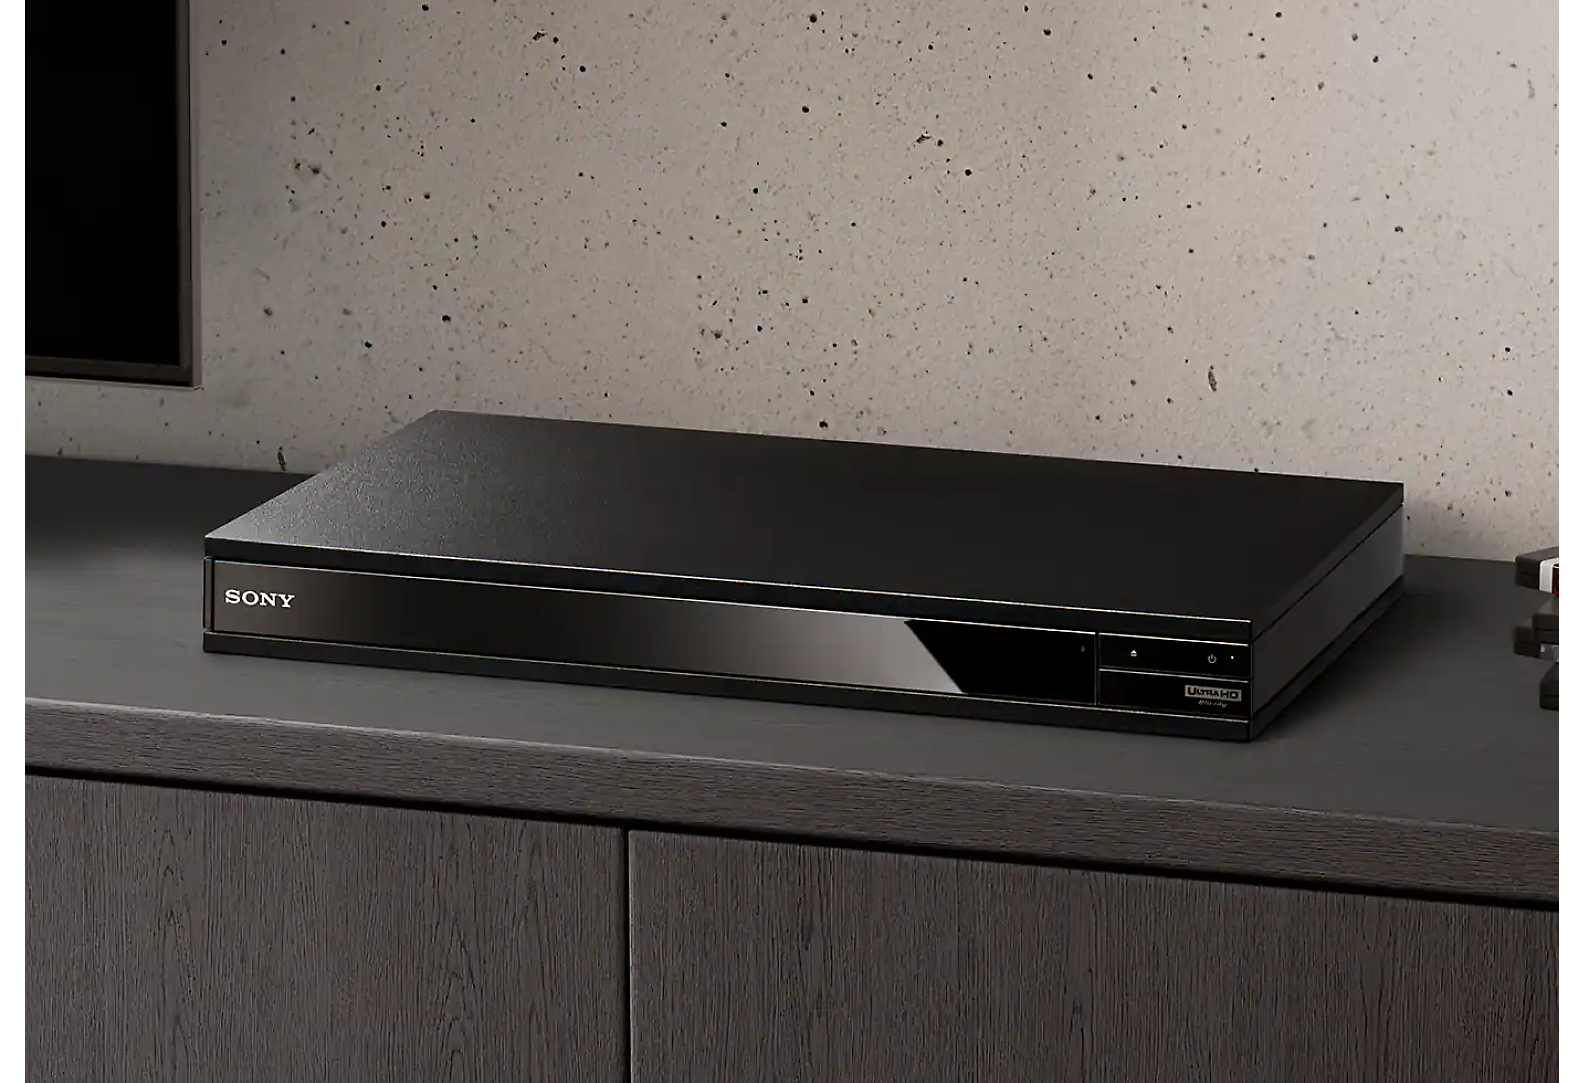 Egy fekete Blu-ray Disc-lejátszó látható egy rakás Blu-ray Disc és egy fekete TV között.